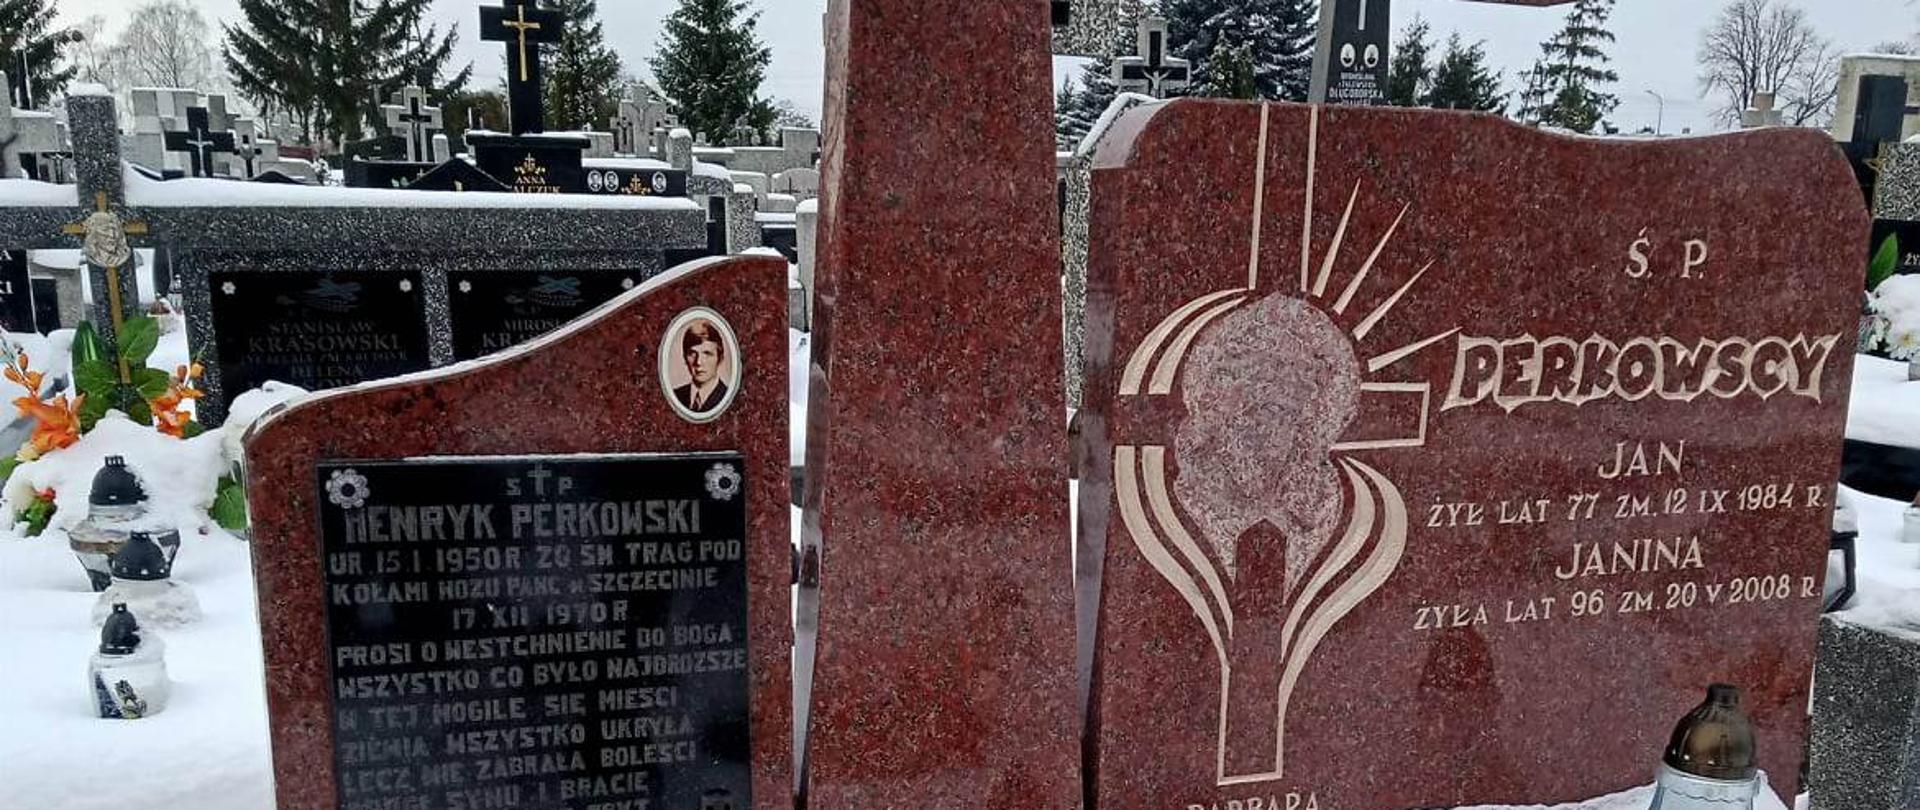 Władze powiatu uczciły pamięć ofiary grudnia 70